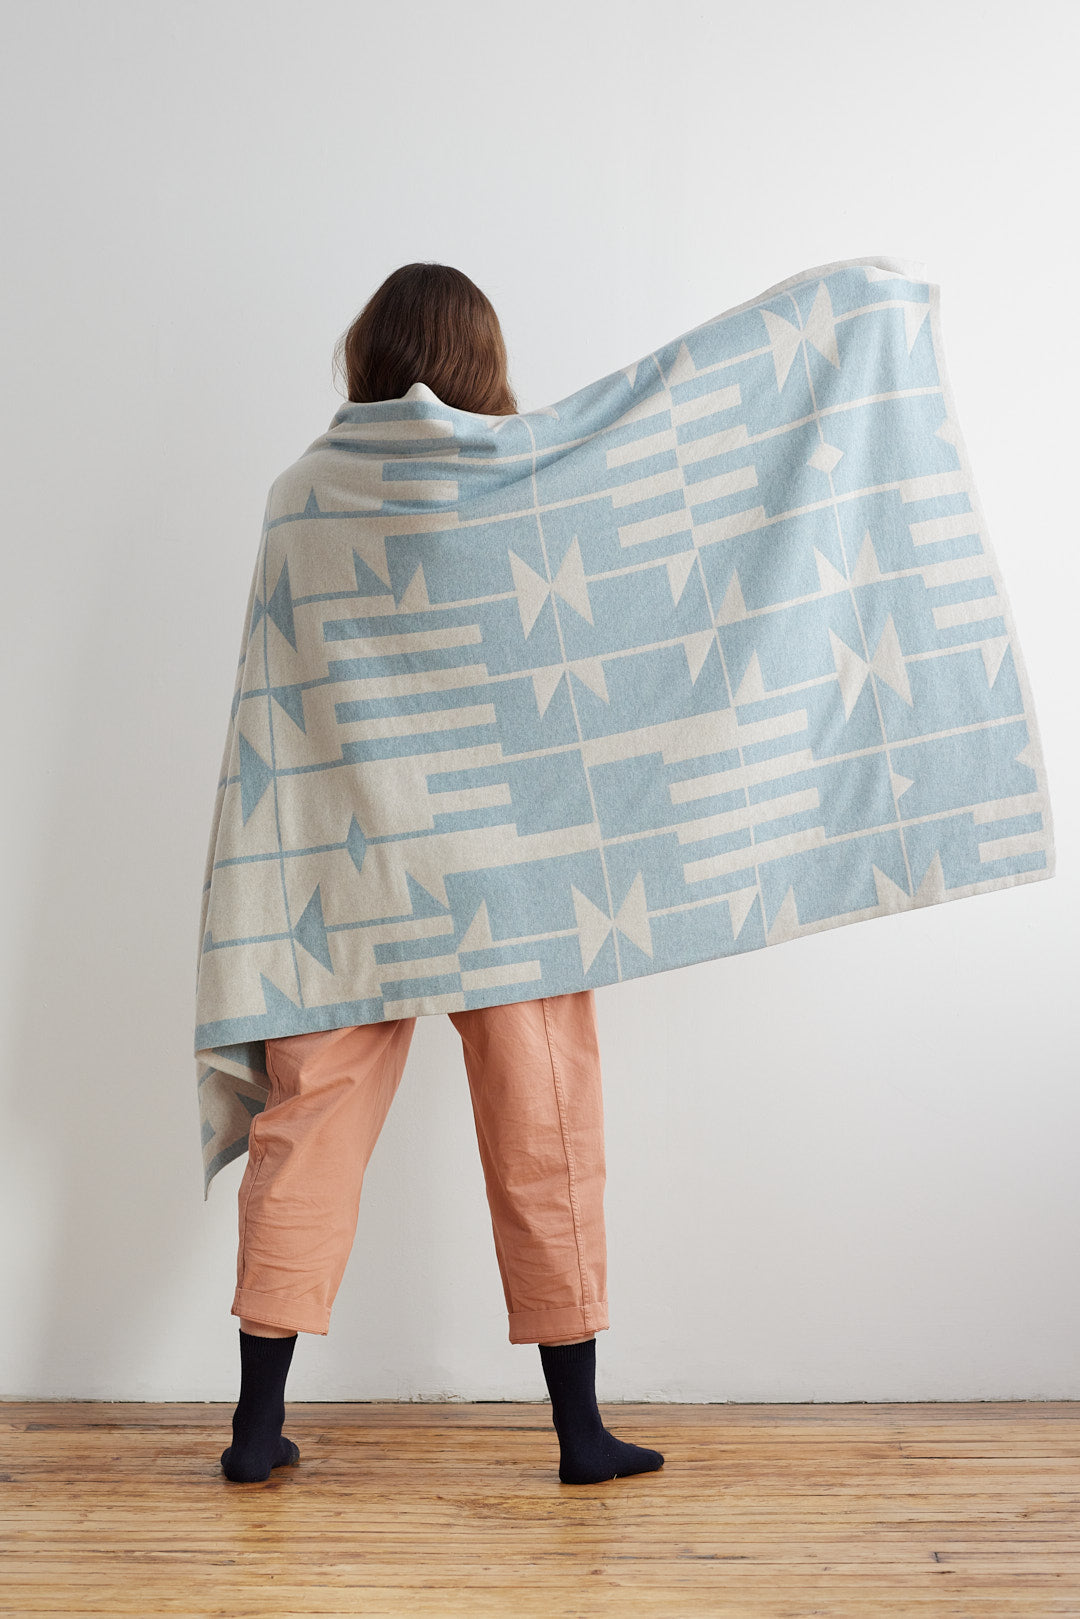 Blanket "Keel" - Haar & Swansdown